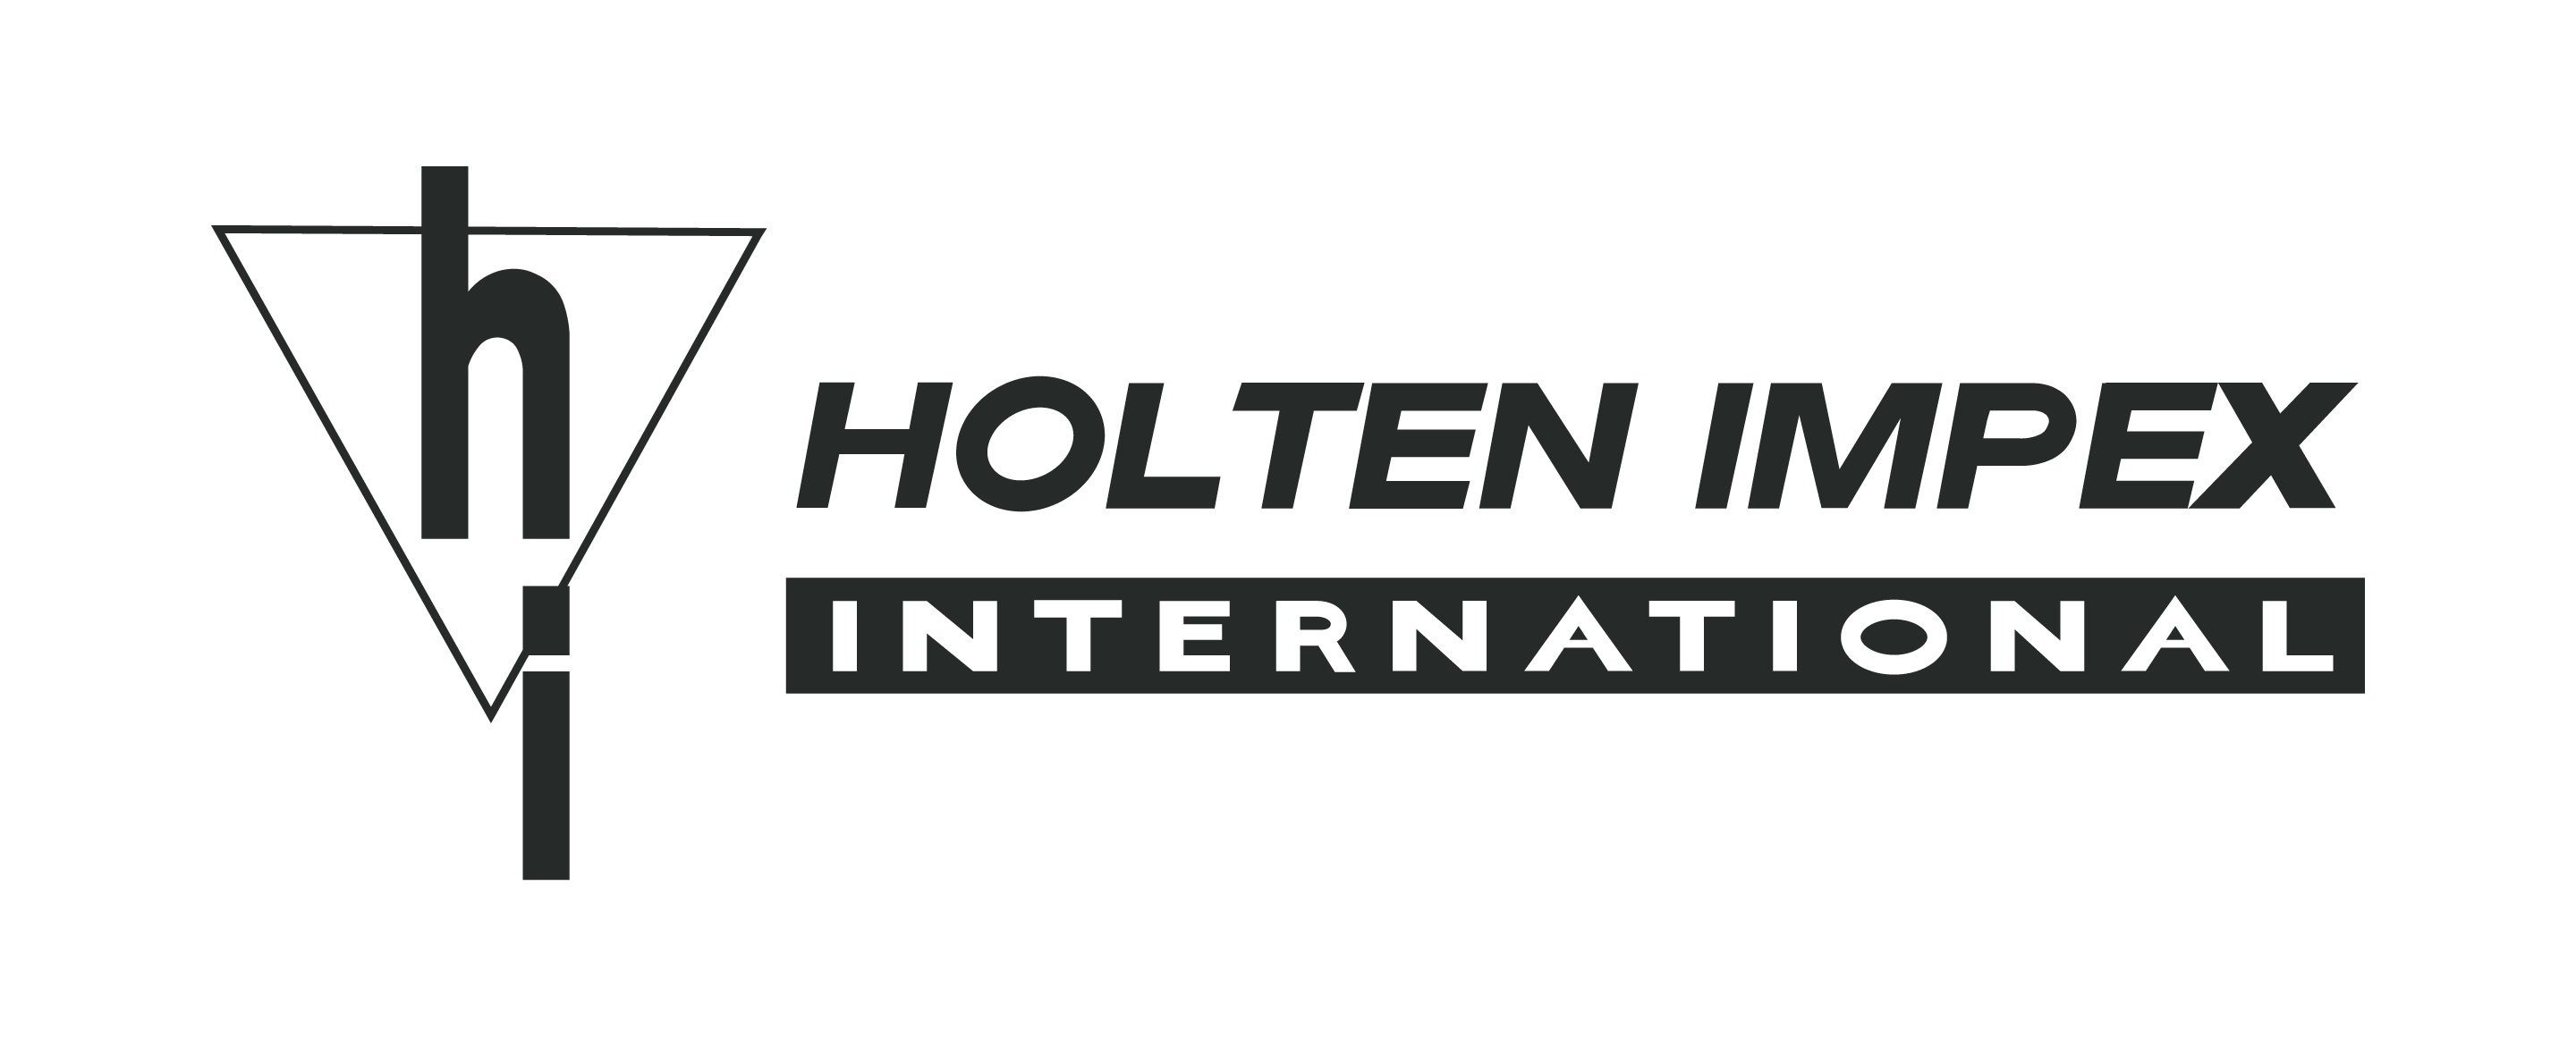 Holten Impex logo